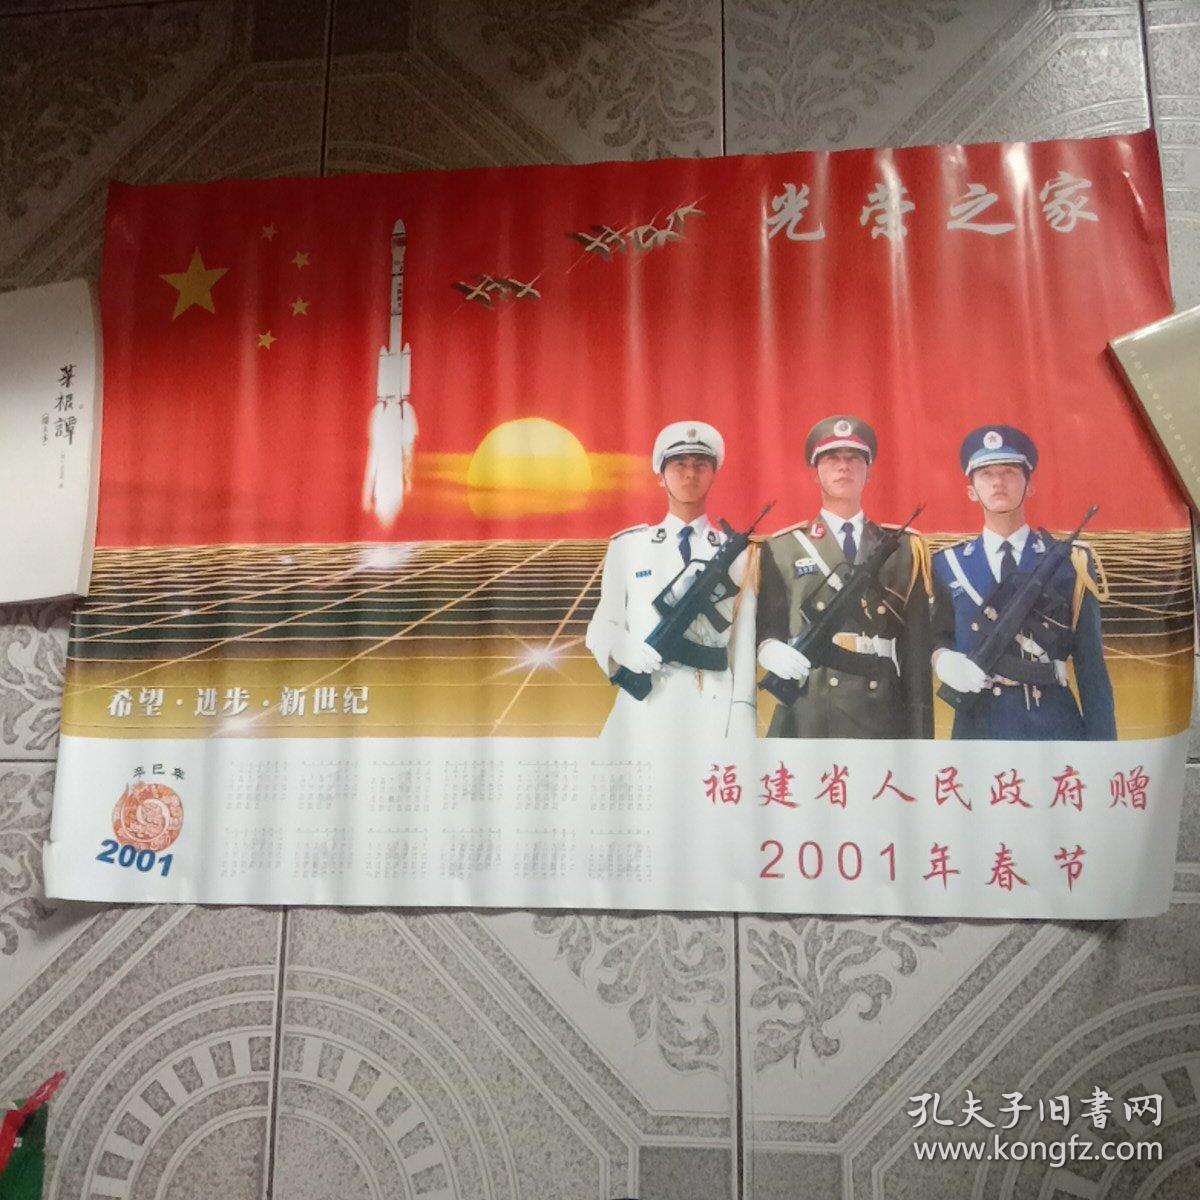 2001年春节福建省人民政府赠一一光荣之家年历画宣传画【卷筒状快递寄】